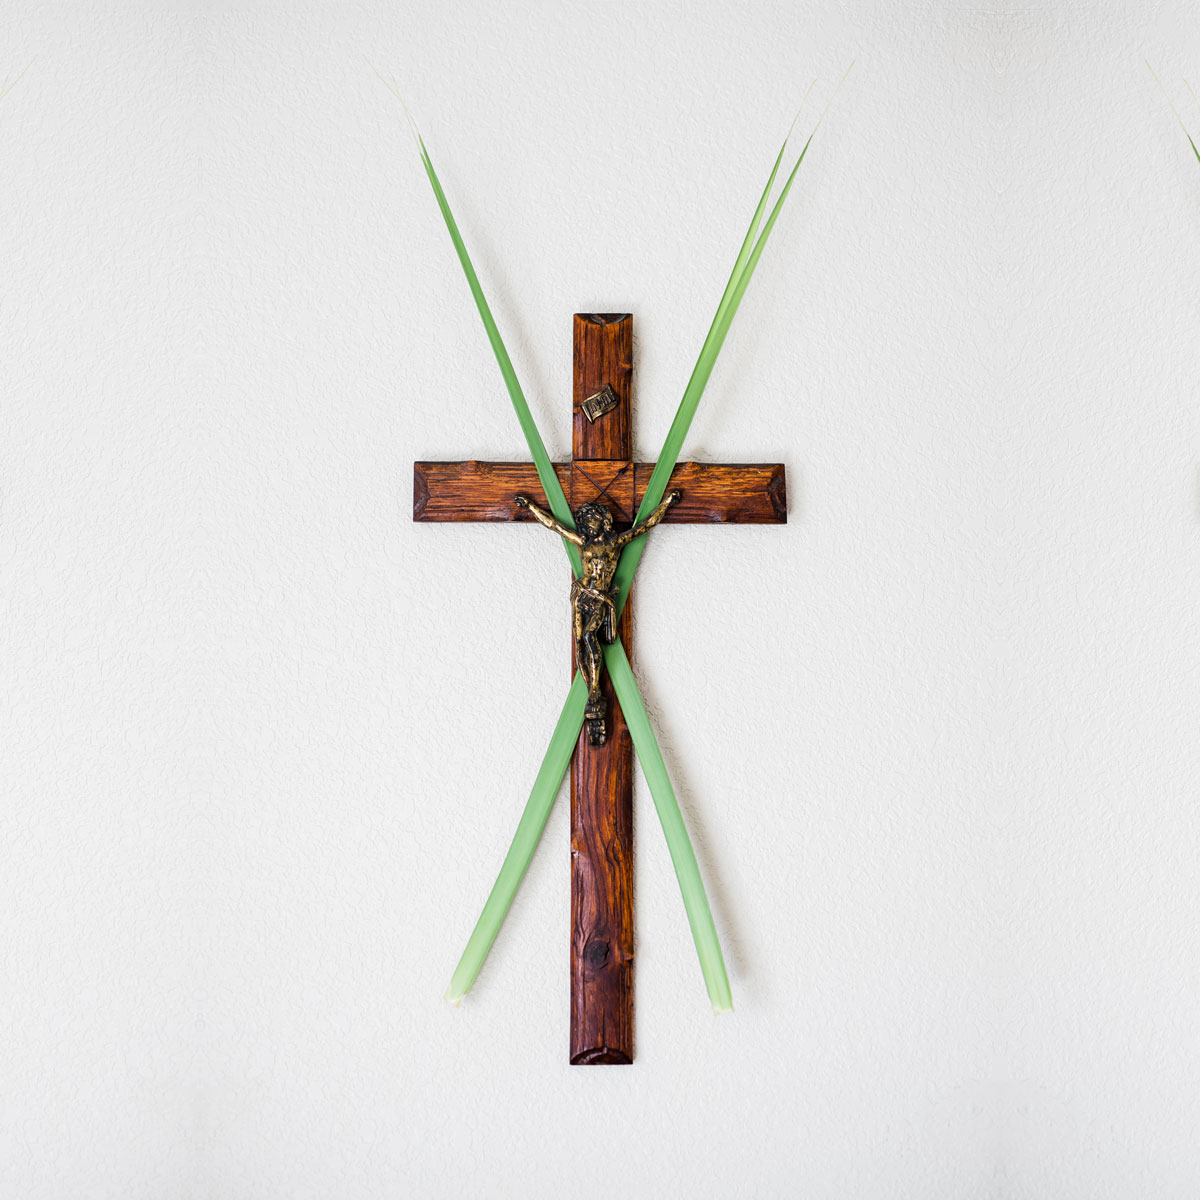 Palm Sunday palms behind a crucifix